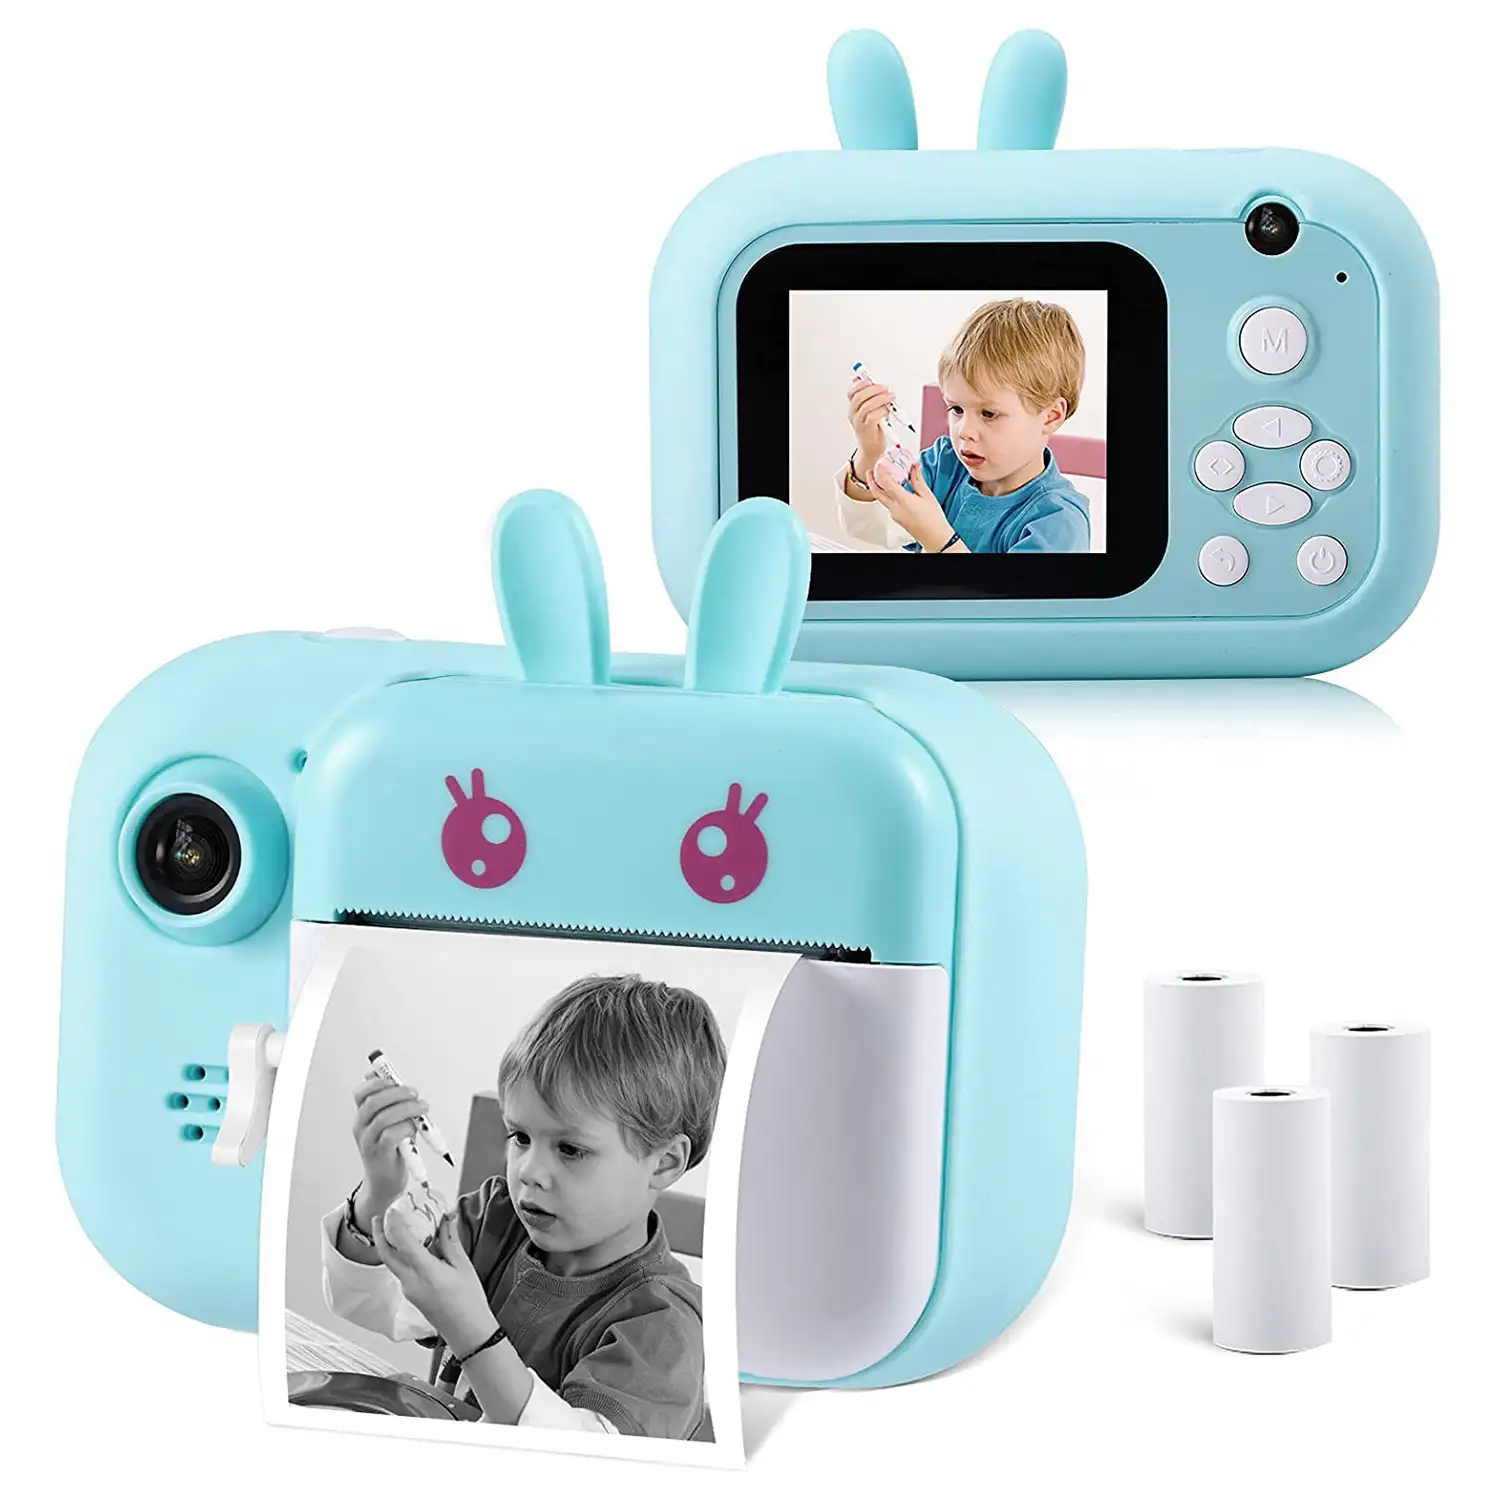 Cámara Conejito digital de fotos 40mpx y video 2,5K para niños. Impresión instantánea de tus fotos preferidas. Doble cámara, para selfies.